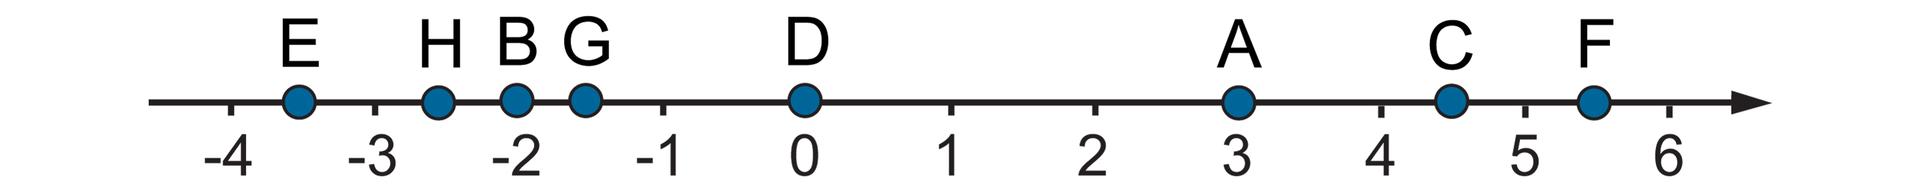 Rysunek osi liczbowej z zaznaczonymi punktami od minus cztery do sześć. Na osi zaznaczone punkty A, B, C, D, E, F, G, H o współrzędnych: A=3, B=-2, C=cztery i jedna druga, D =0, E = minus trzy i jedna druga, F = pięć i jedna druga, G = minus jeden i jedna druga, H = minus dwa i jedna druga.